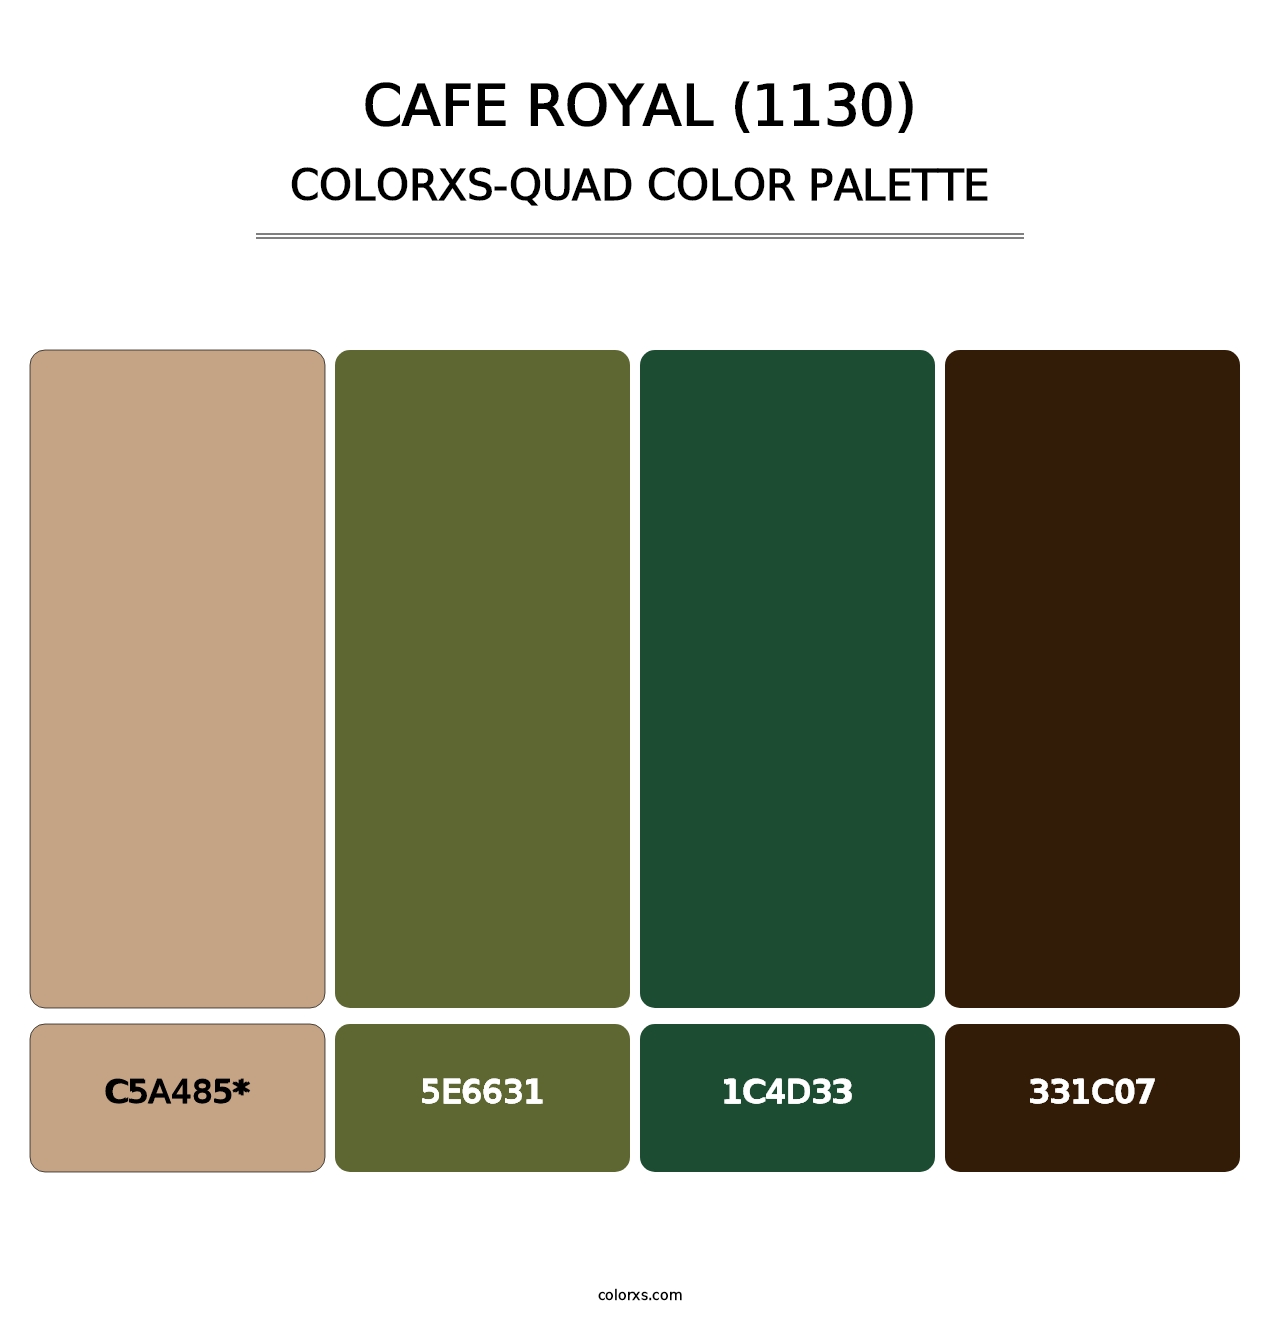 Cafe Royal (1130) - Colorxs Quad Palette